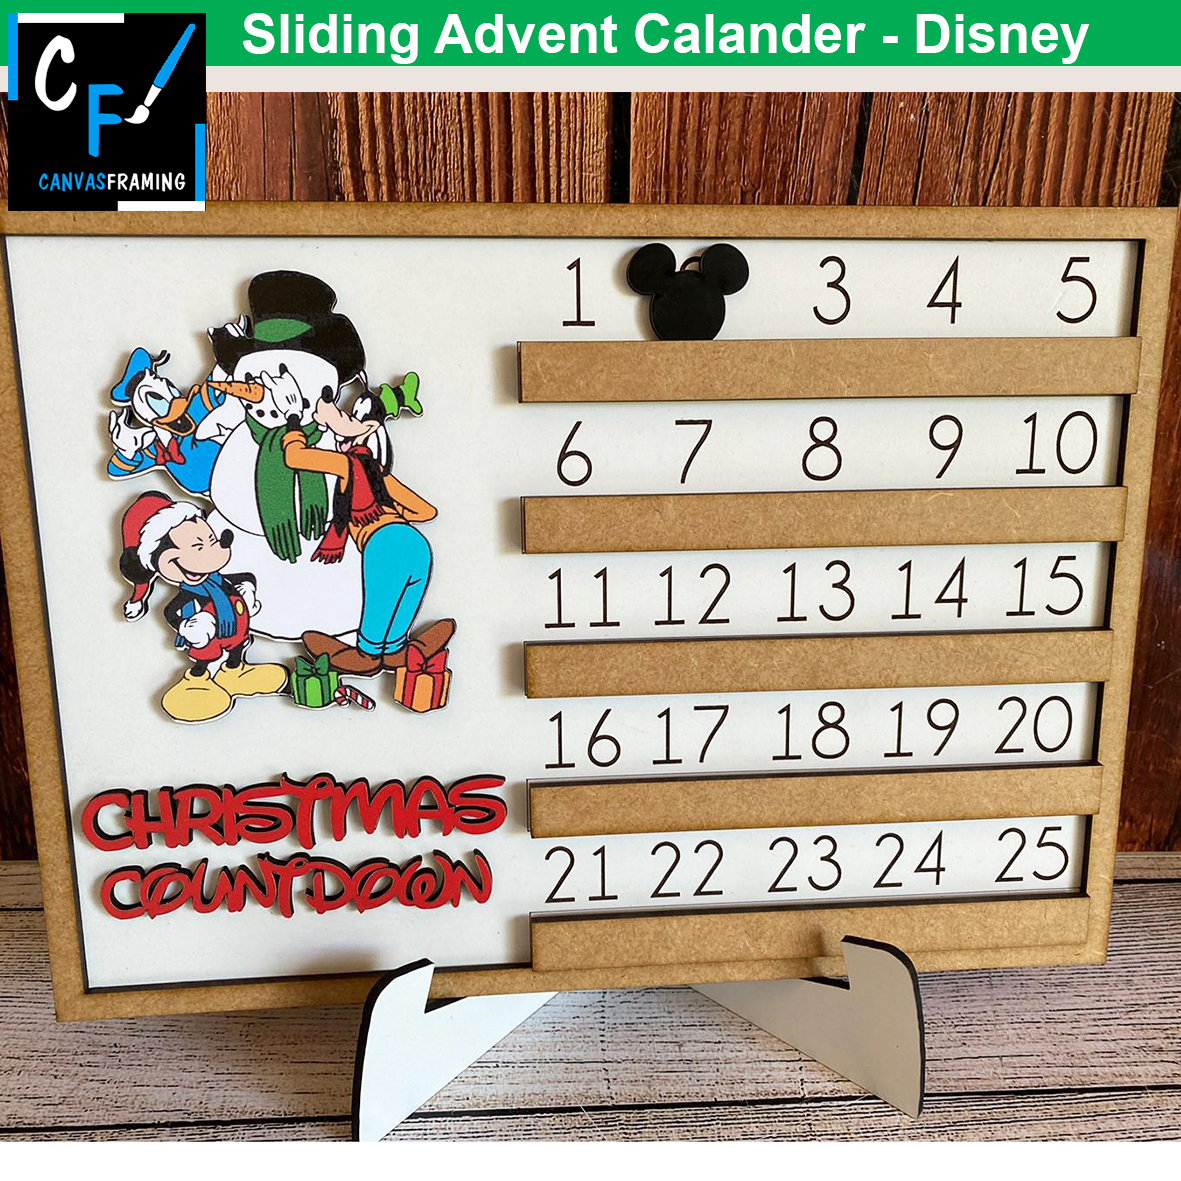 Sliding Advent Calendar